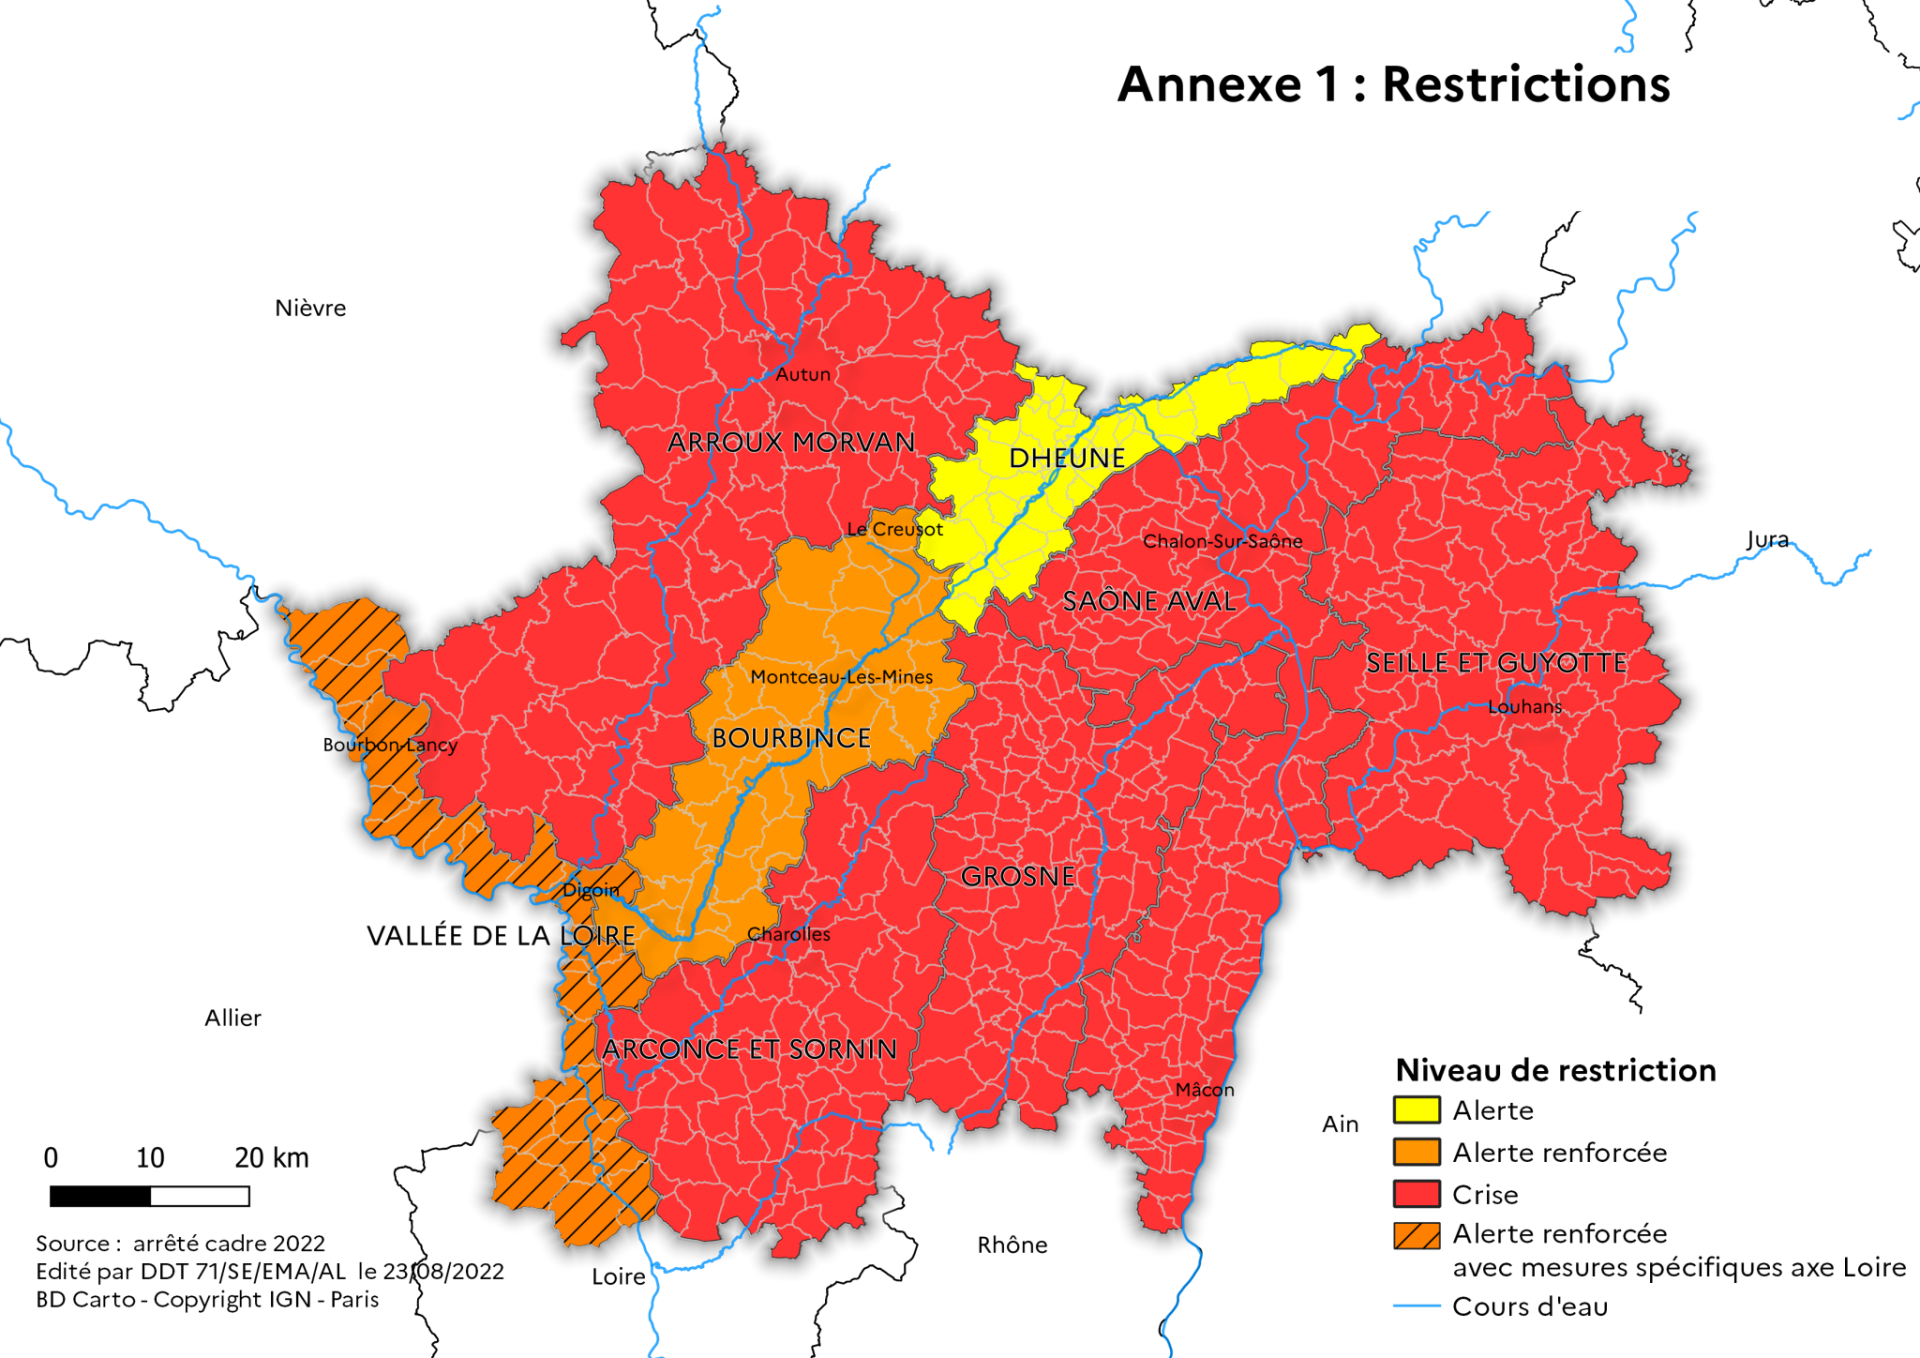 Le bassin de la Loire retrouve le niveau d’alerte renforcée